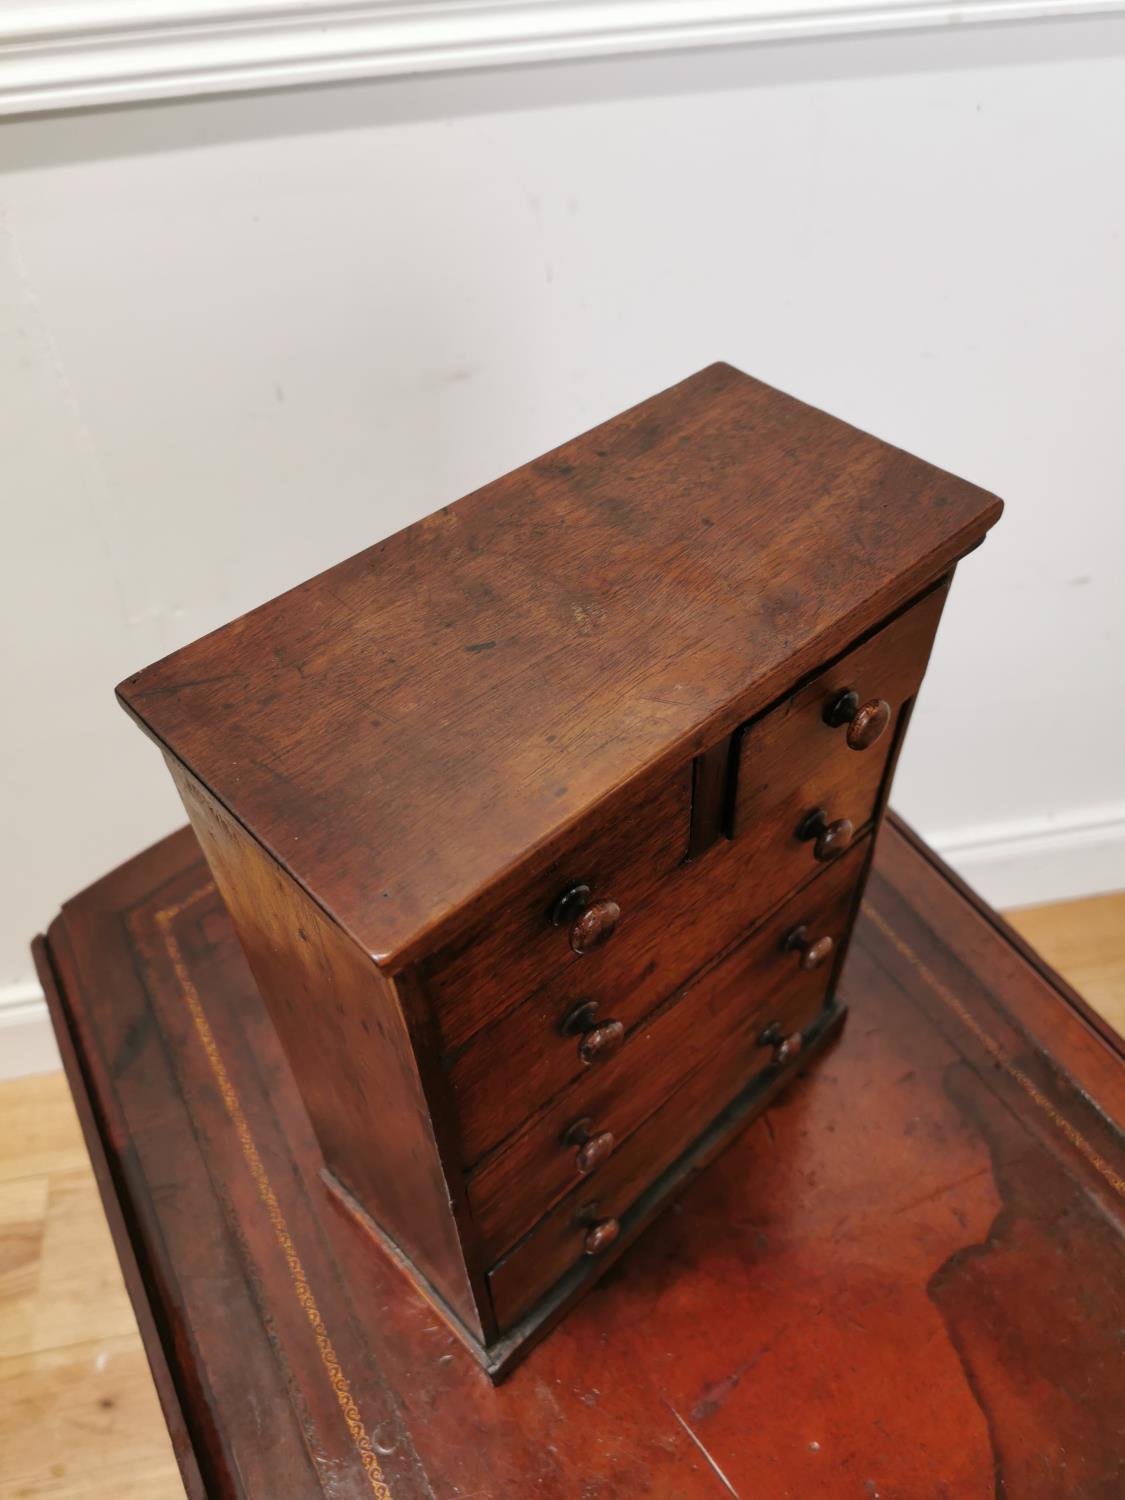 Edwardian rosewood apprentice chest {30 cm H x 23 cm W x 11 cm D}. - Image 2 of 3